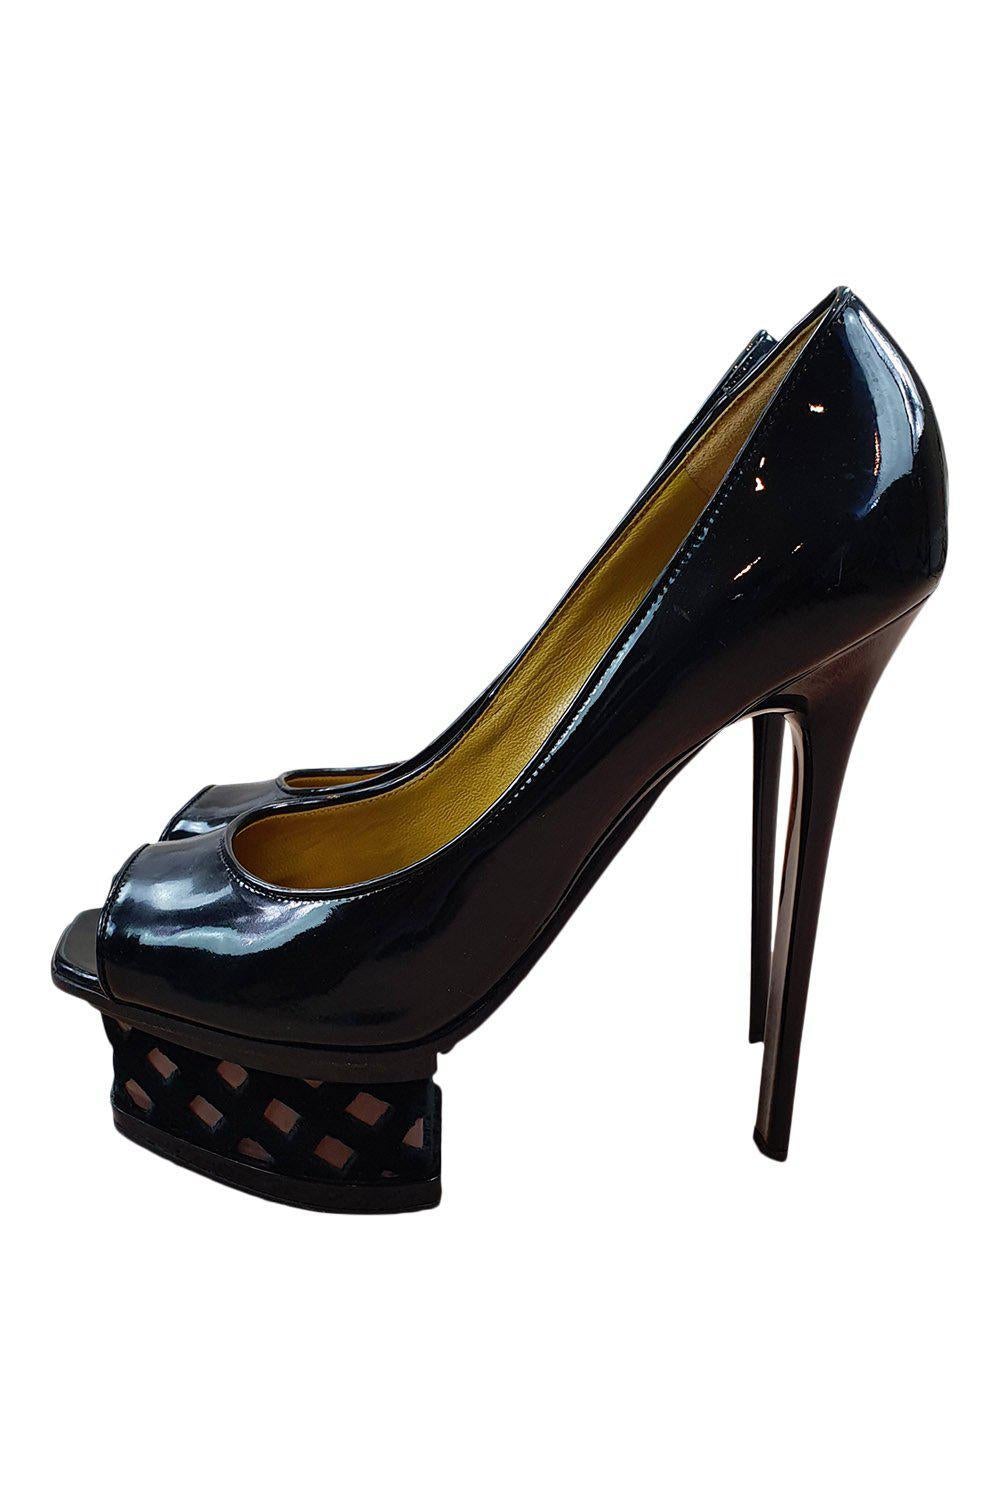 POLLINI Black Patent Leather Peep Toe Platform Heel (39)-Pollini-The Freperie